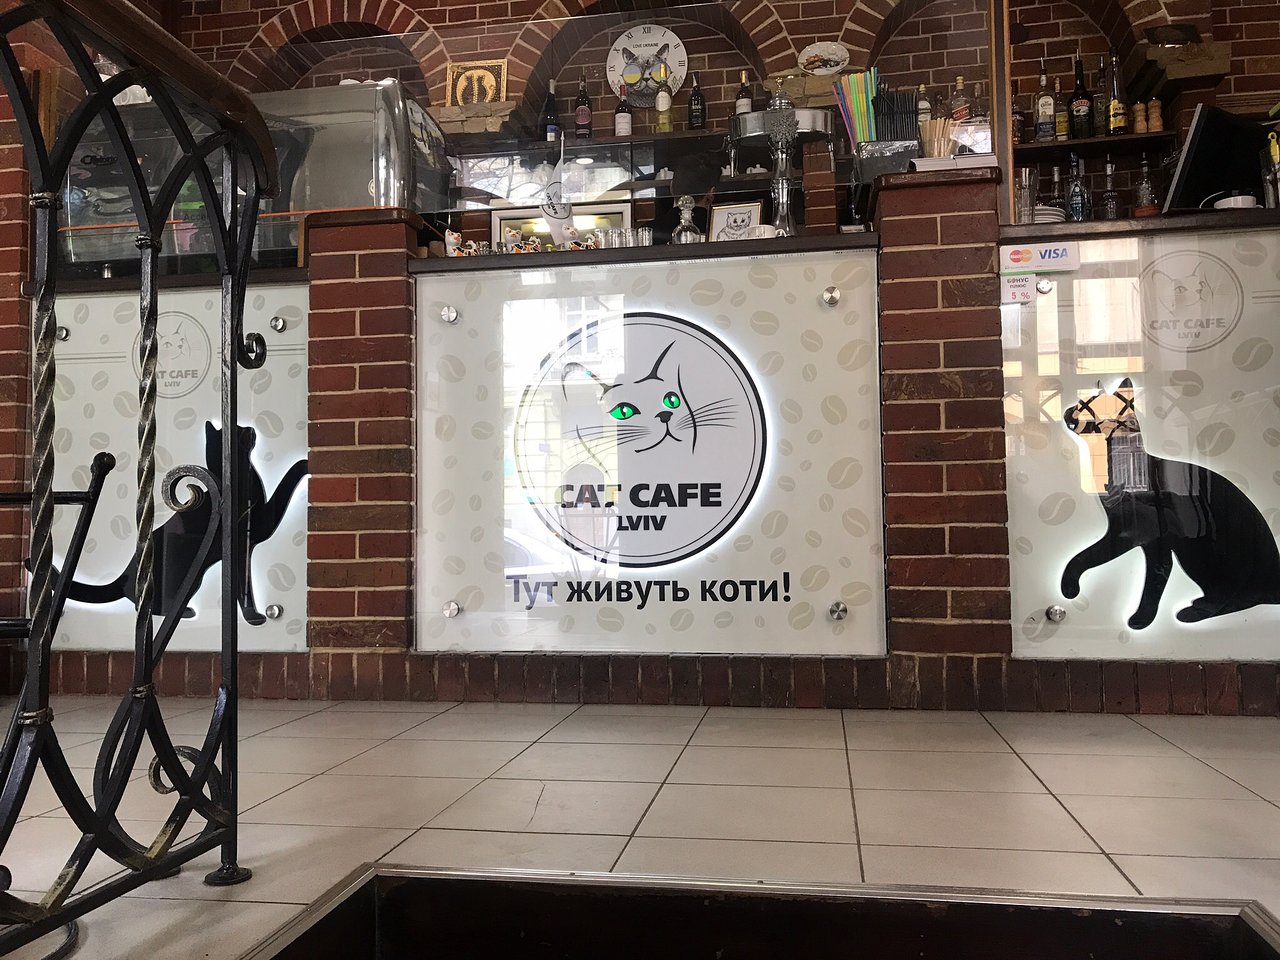 Lviv’s Cat Café